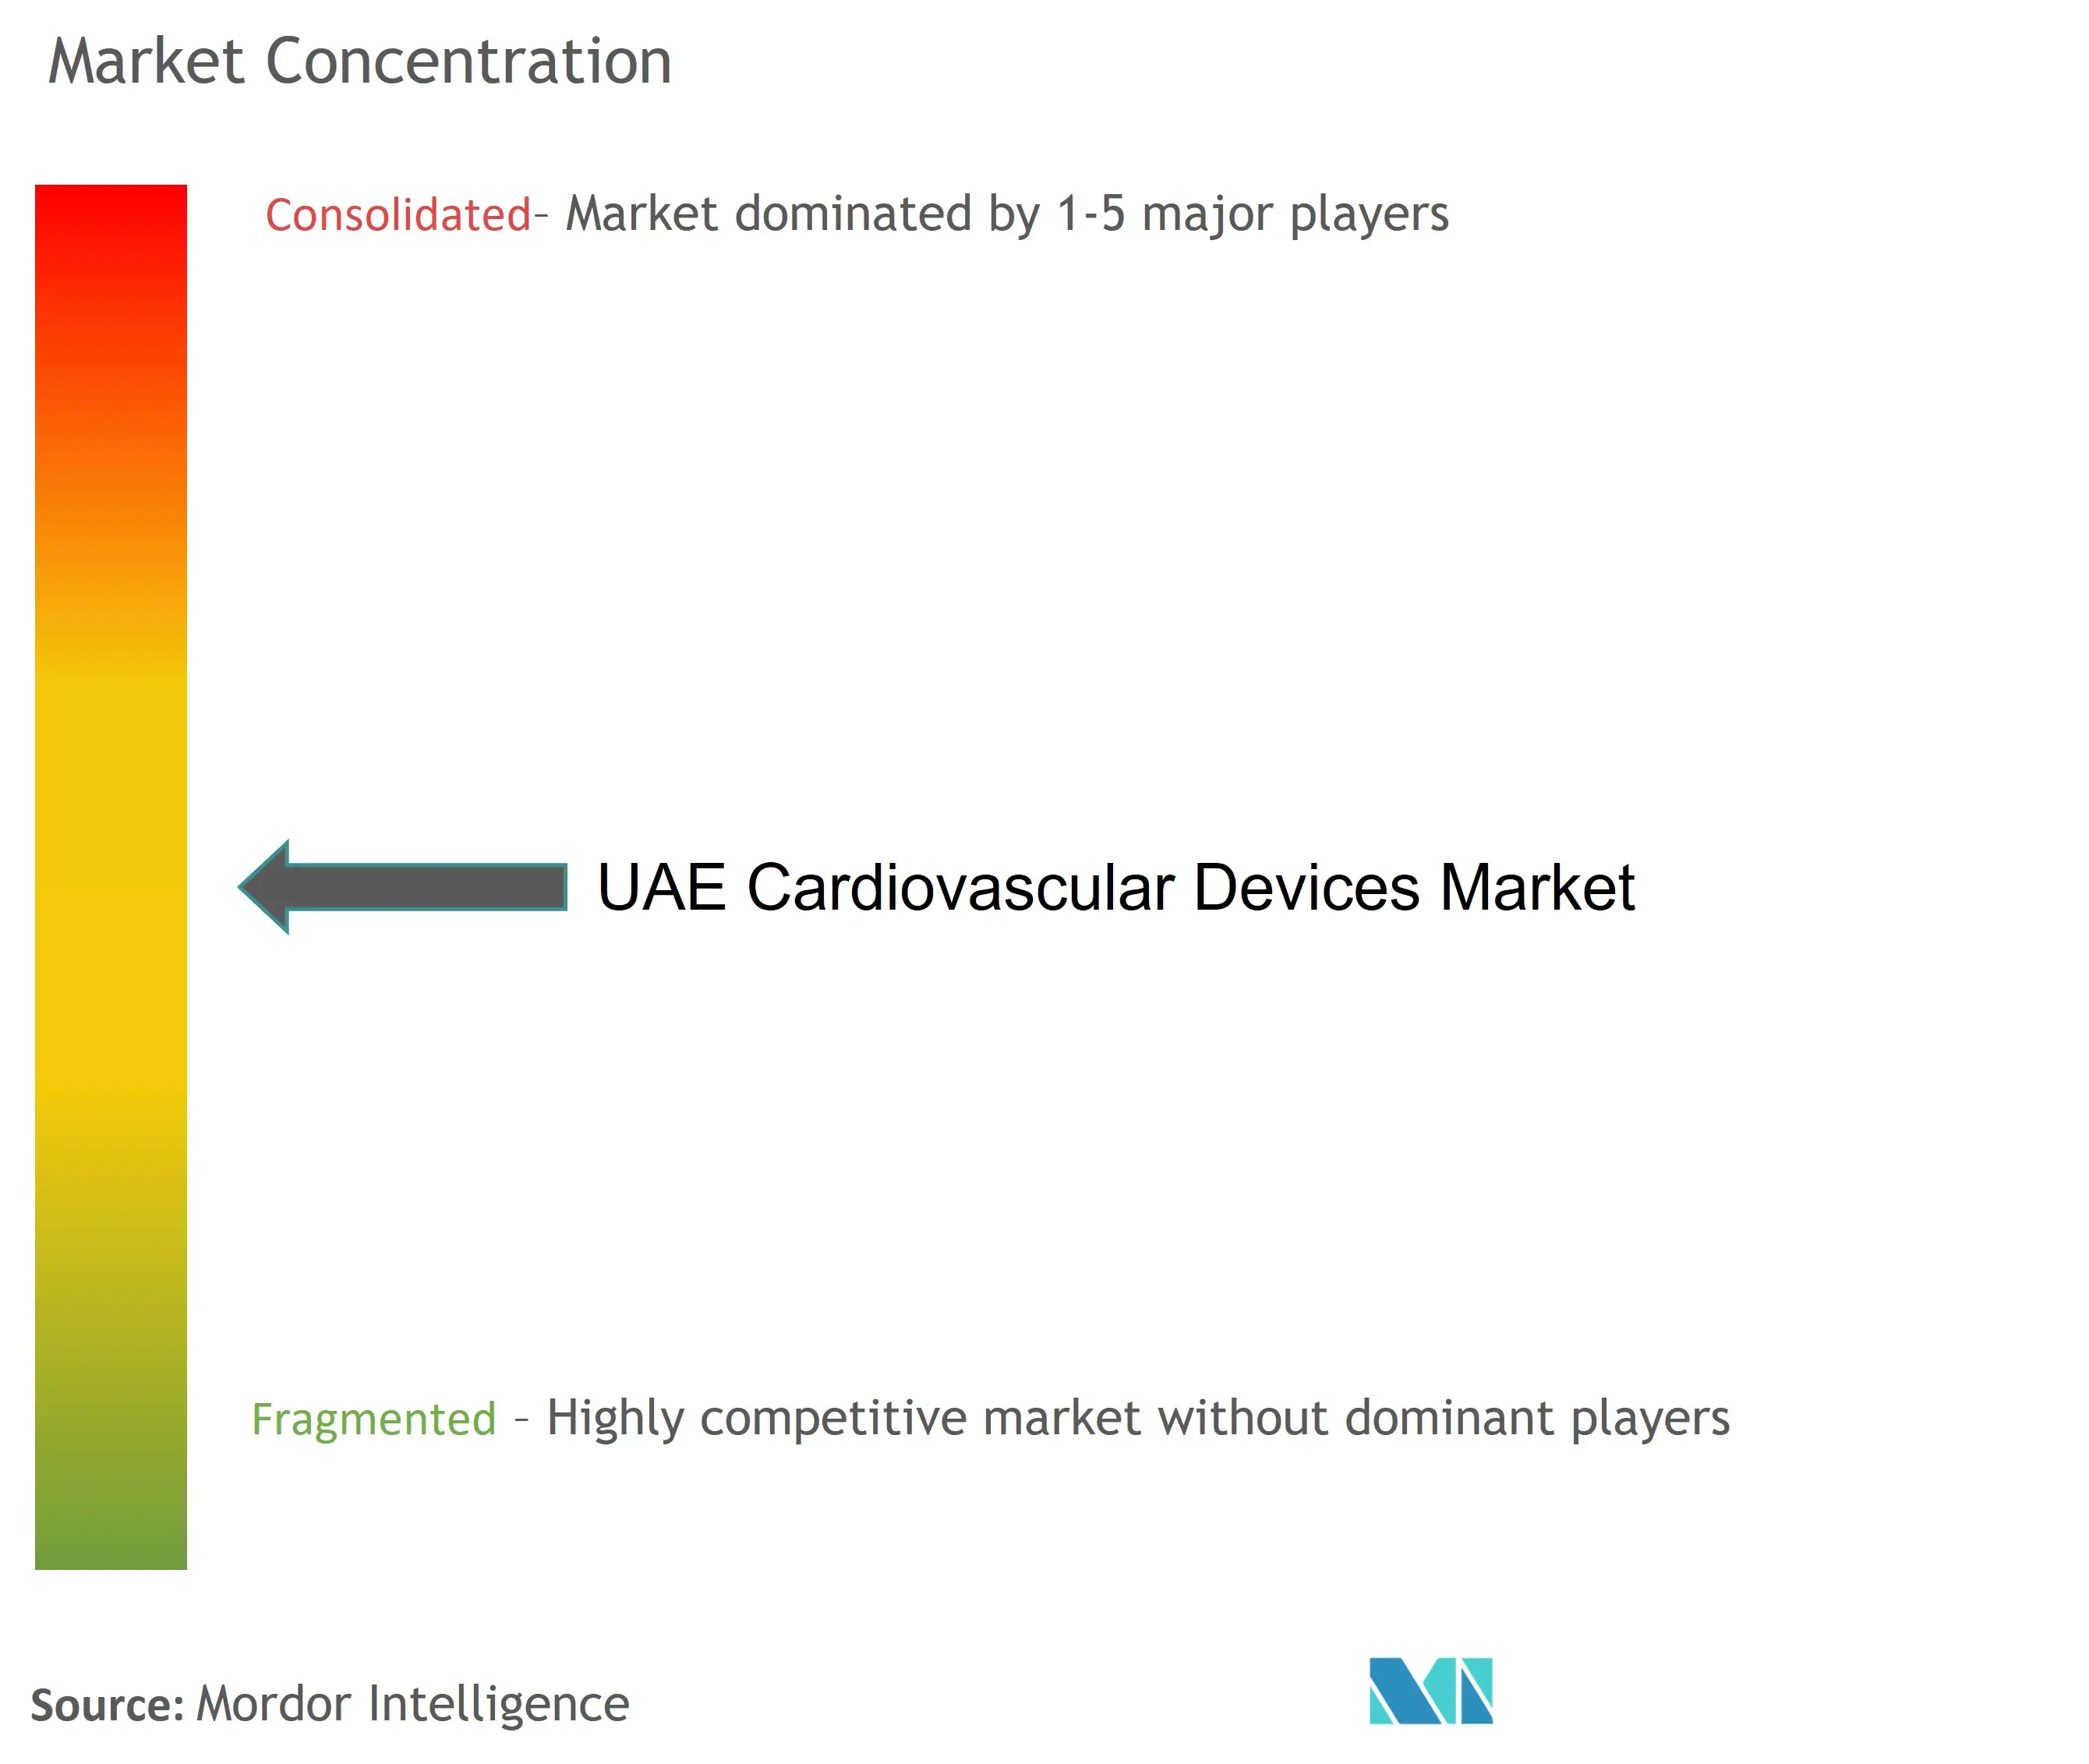 Concentración del mercado de dispositivos cardiovasculares de los EAU